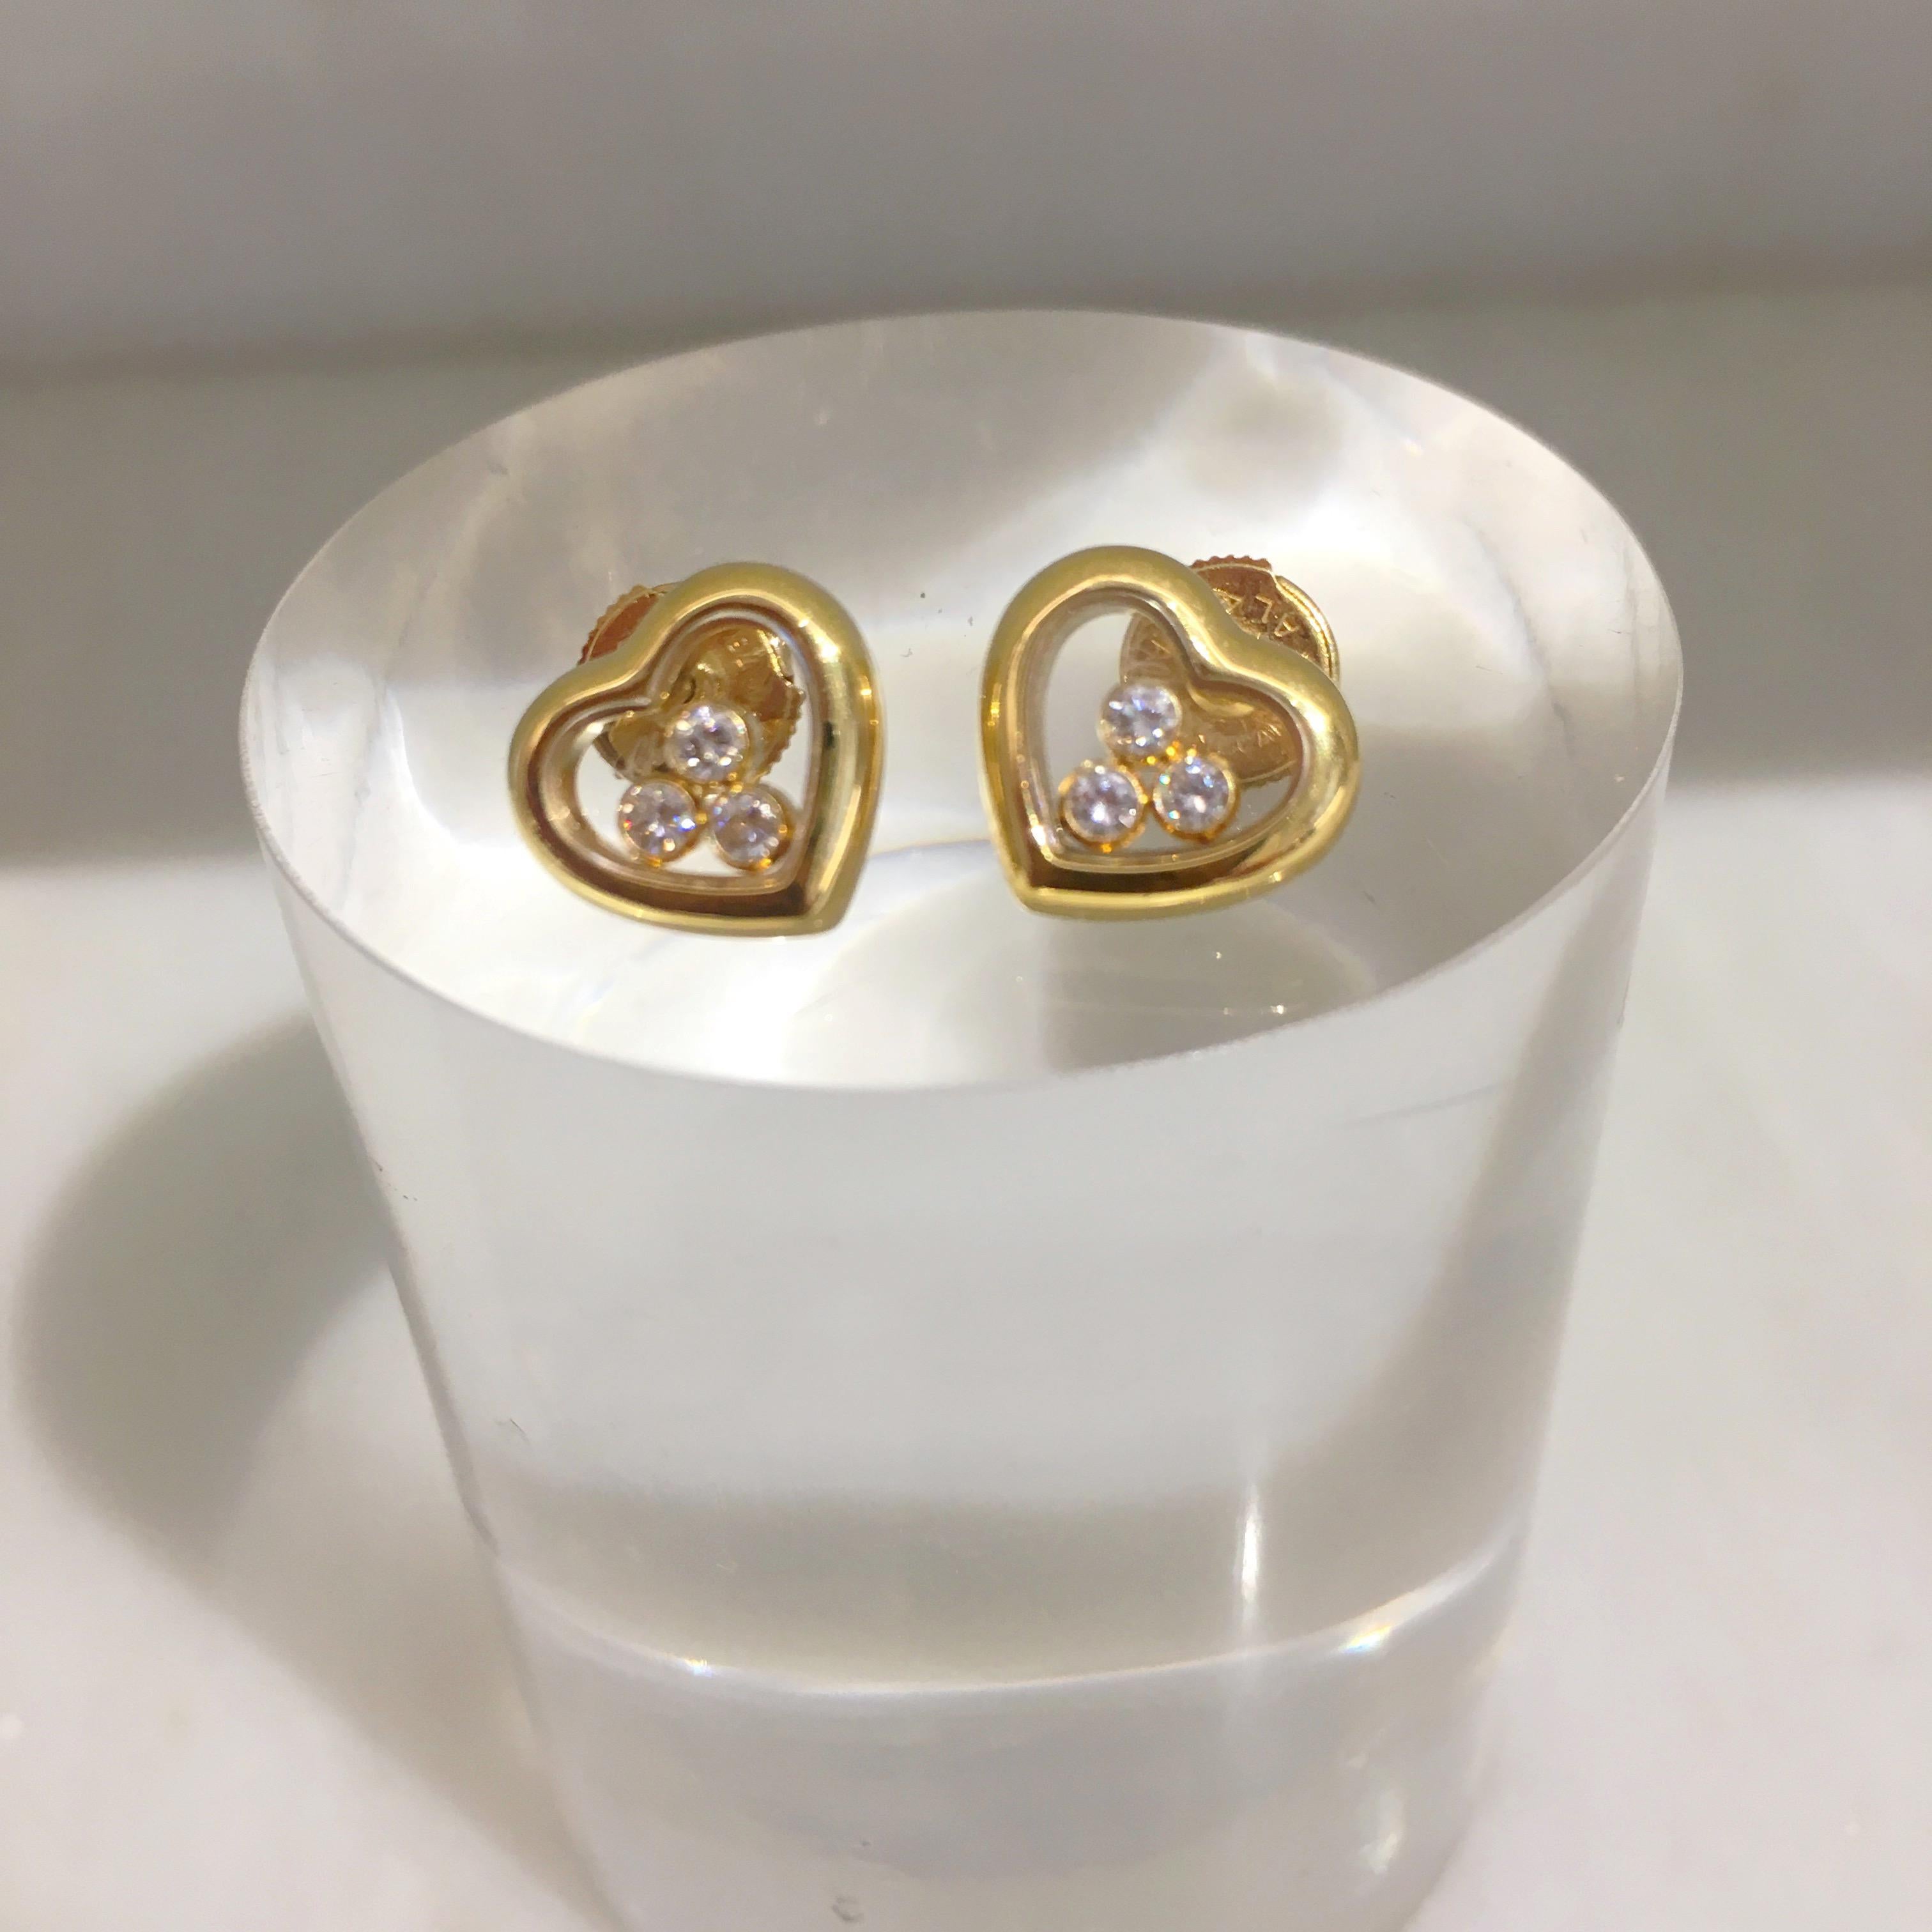 Modern Chopard 18 Karat Gold Happy Diamond Heart Earrings with 3 Floating Diamonds